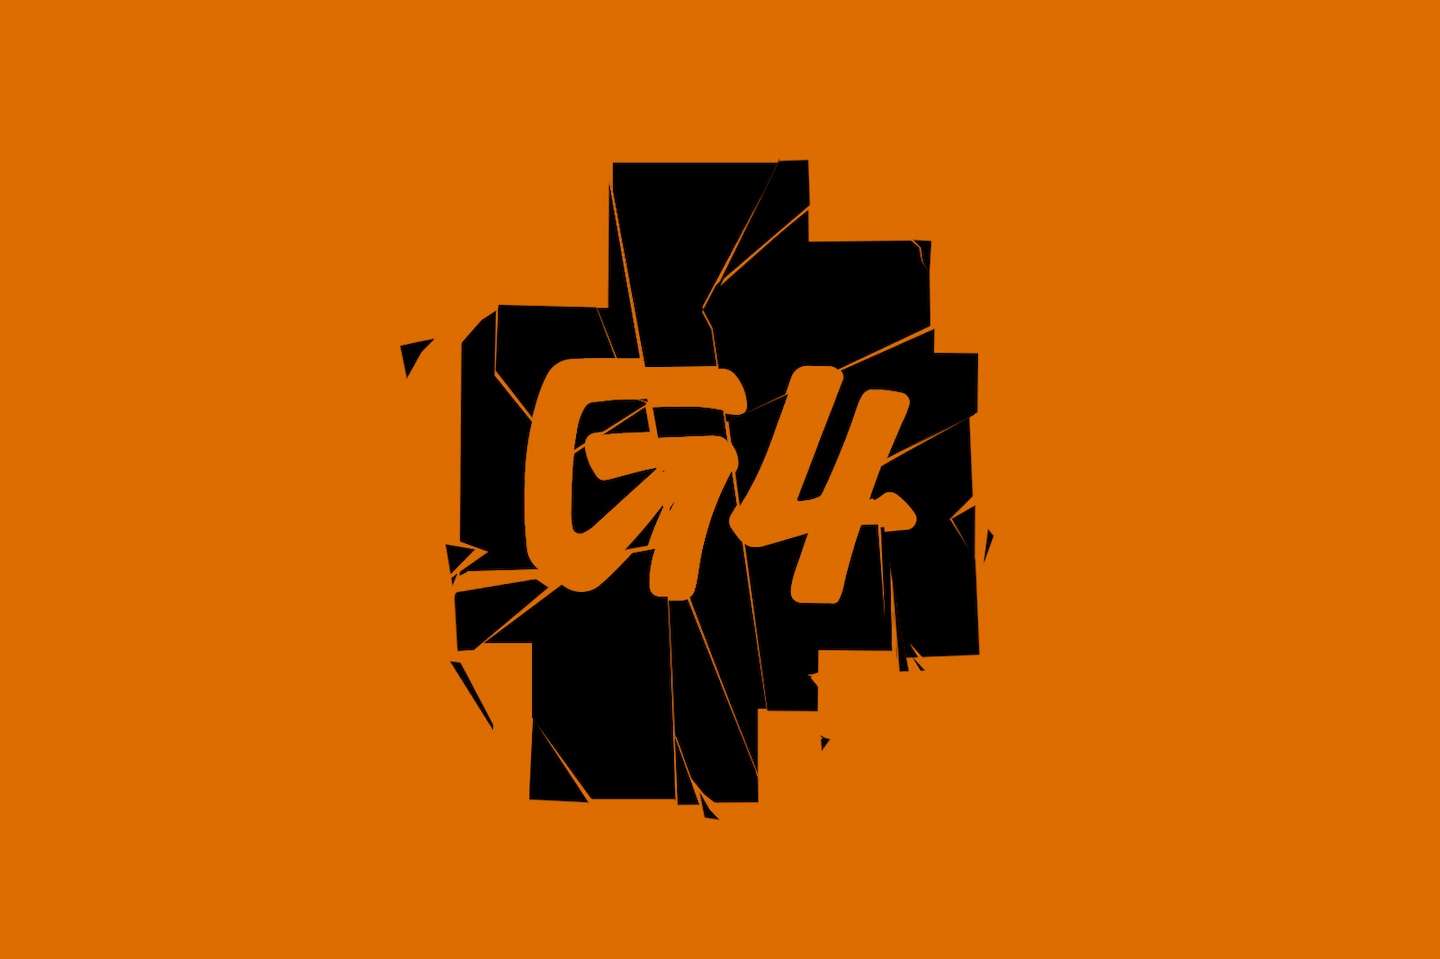 Why G4 failed